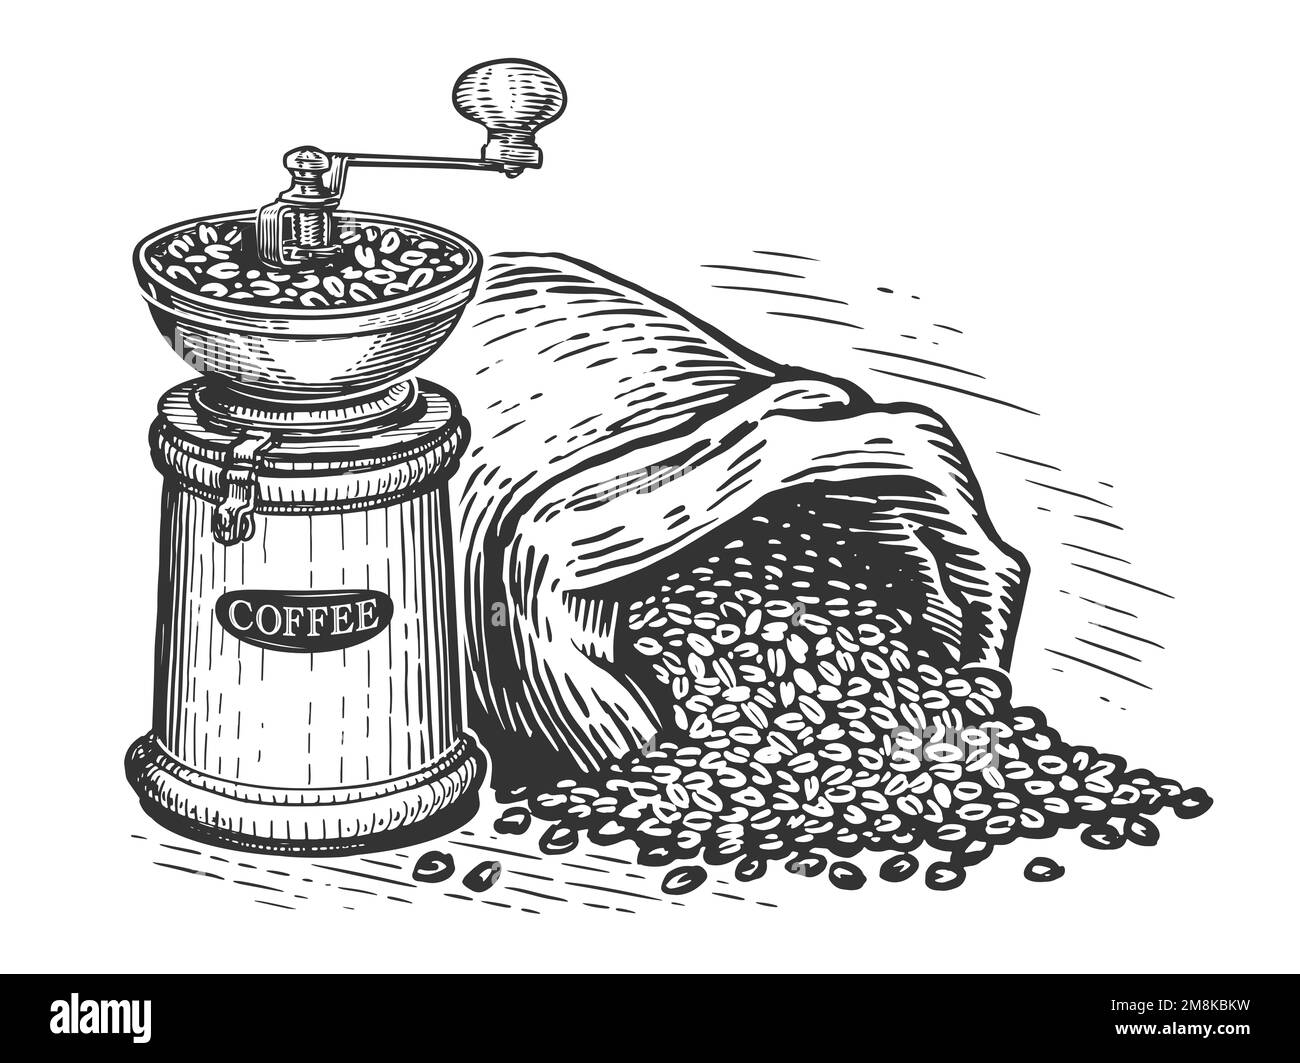 Moulin à café et sac de grains de café. Concept des boissons. Dessin gravé à la main, illustration ancienne Banque D'Images